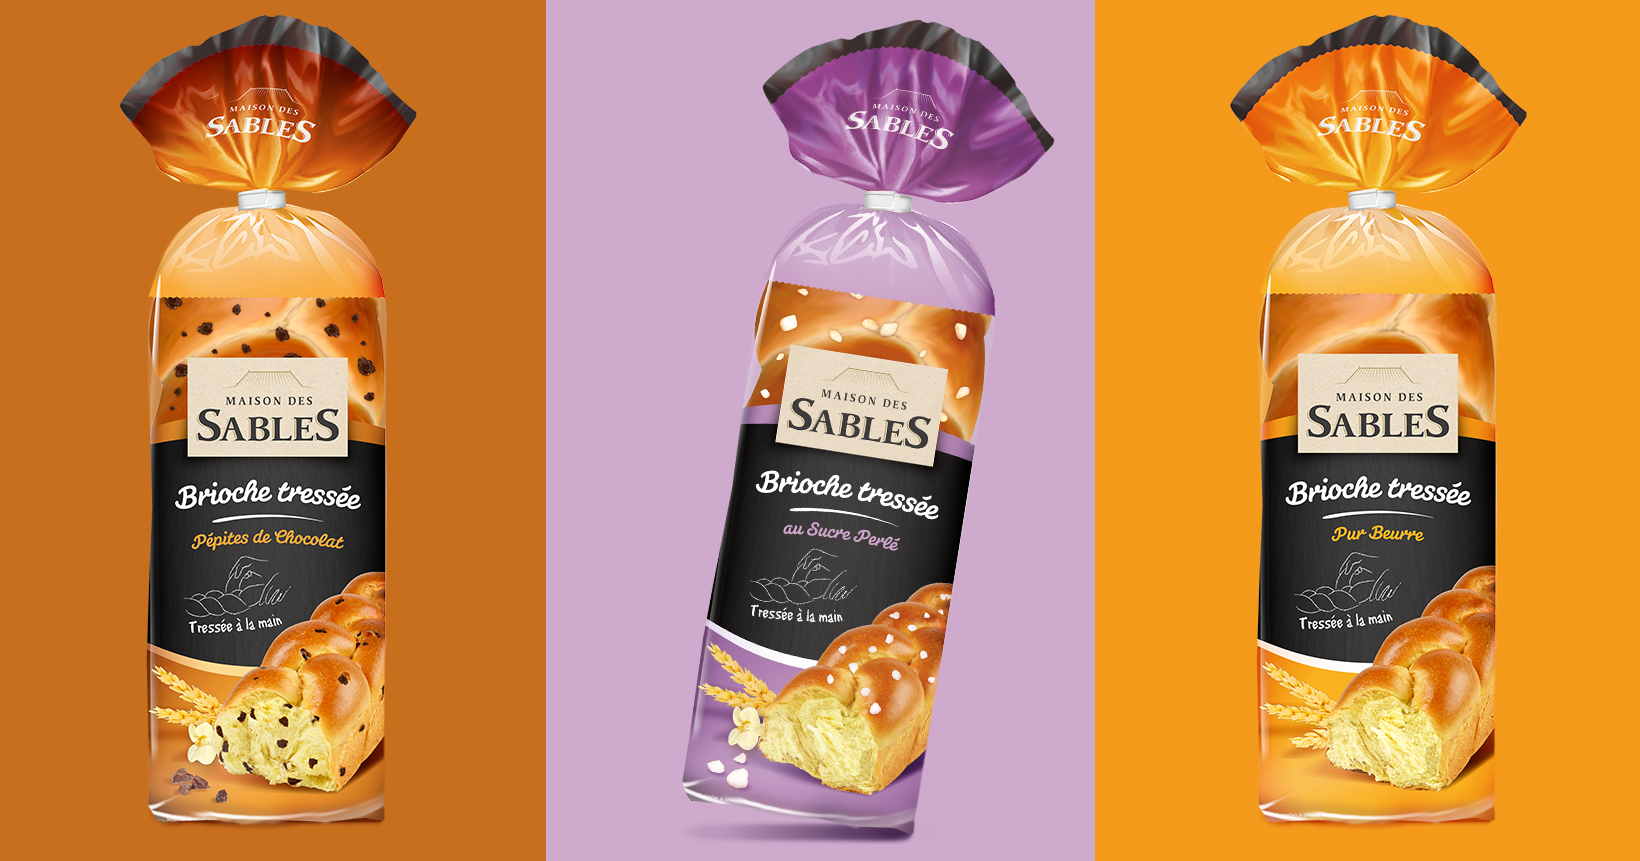 Gamme de trois packagings Maison des sables, brioches, sur fond brun, violet et orange